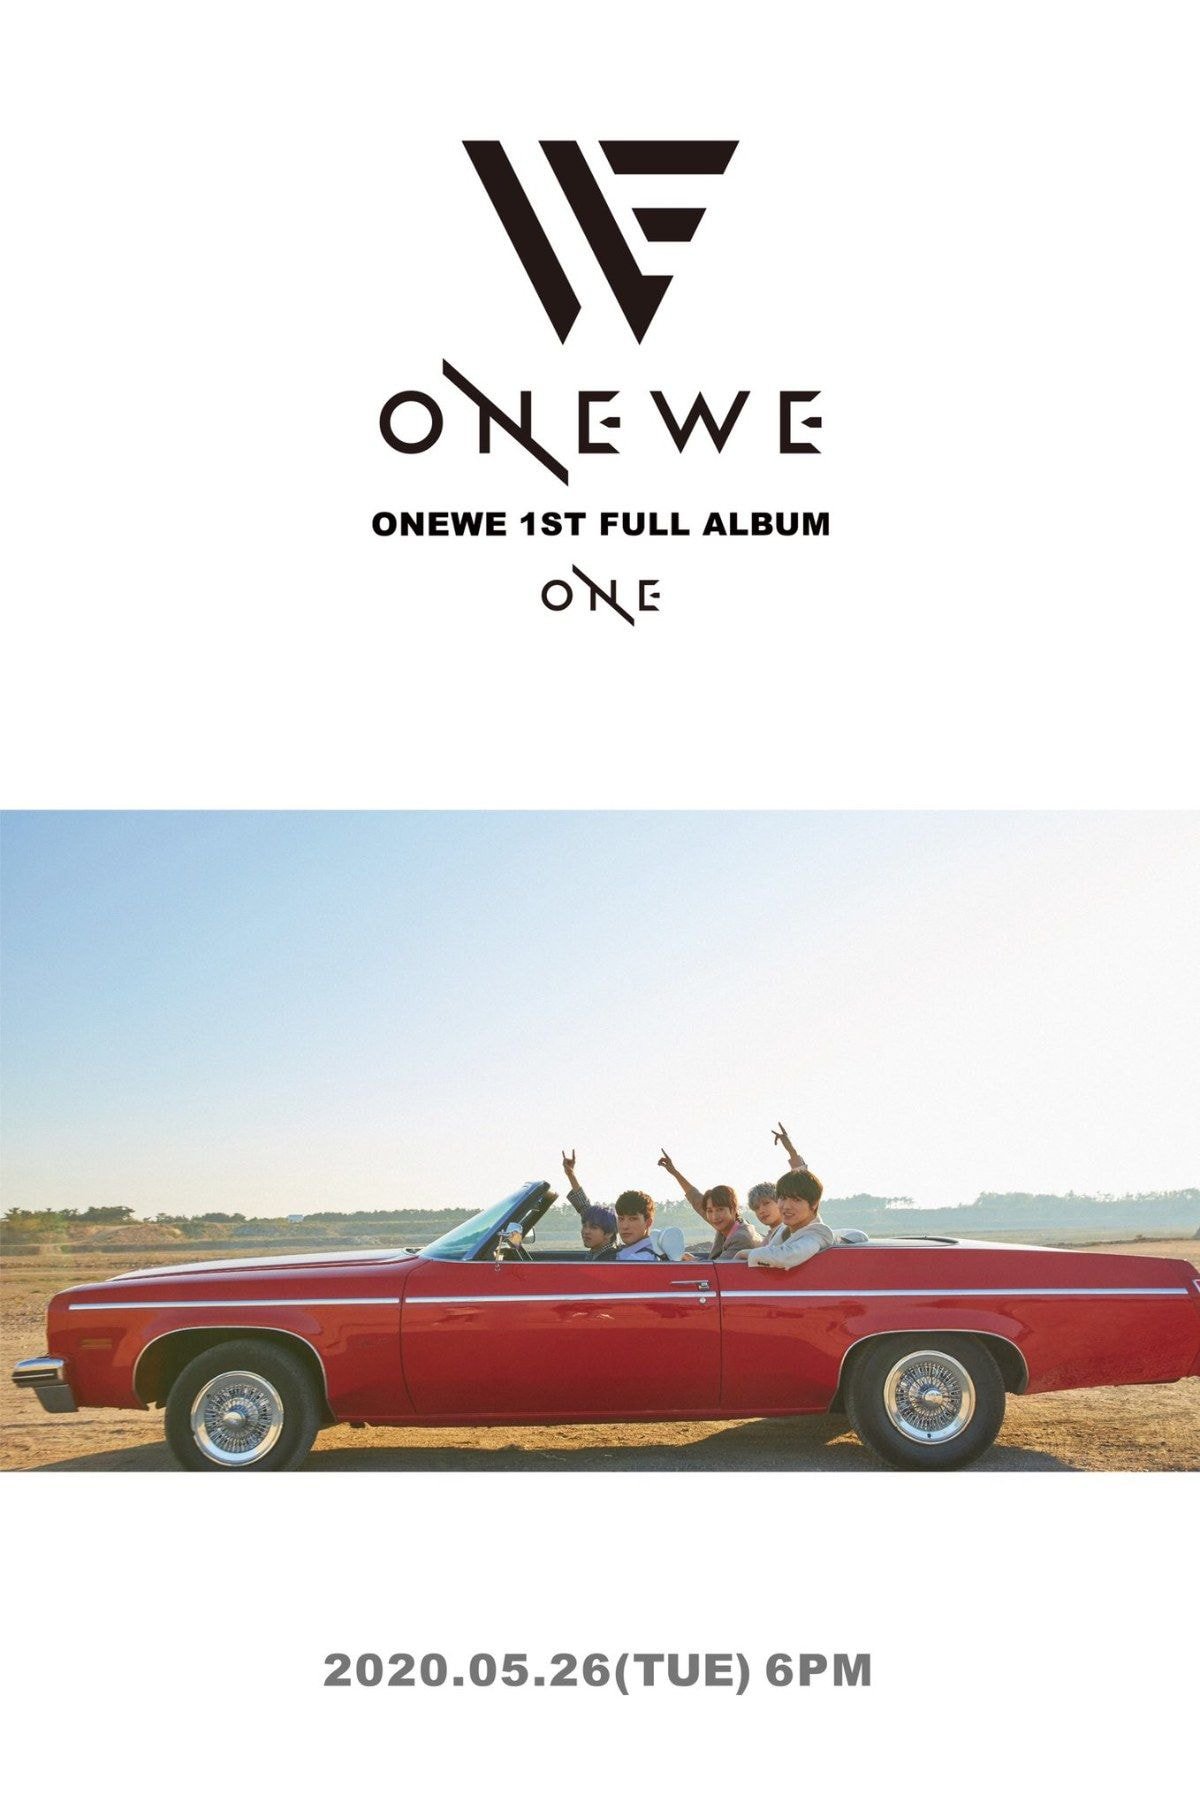 원위 1ST FULL ALBUM [ONE] COMING SOON ✔2020.05.26 6PM RELEASE